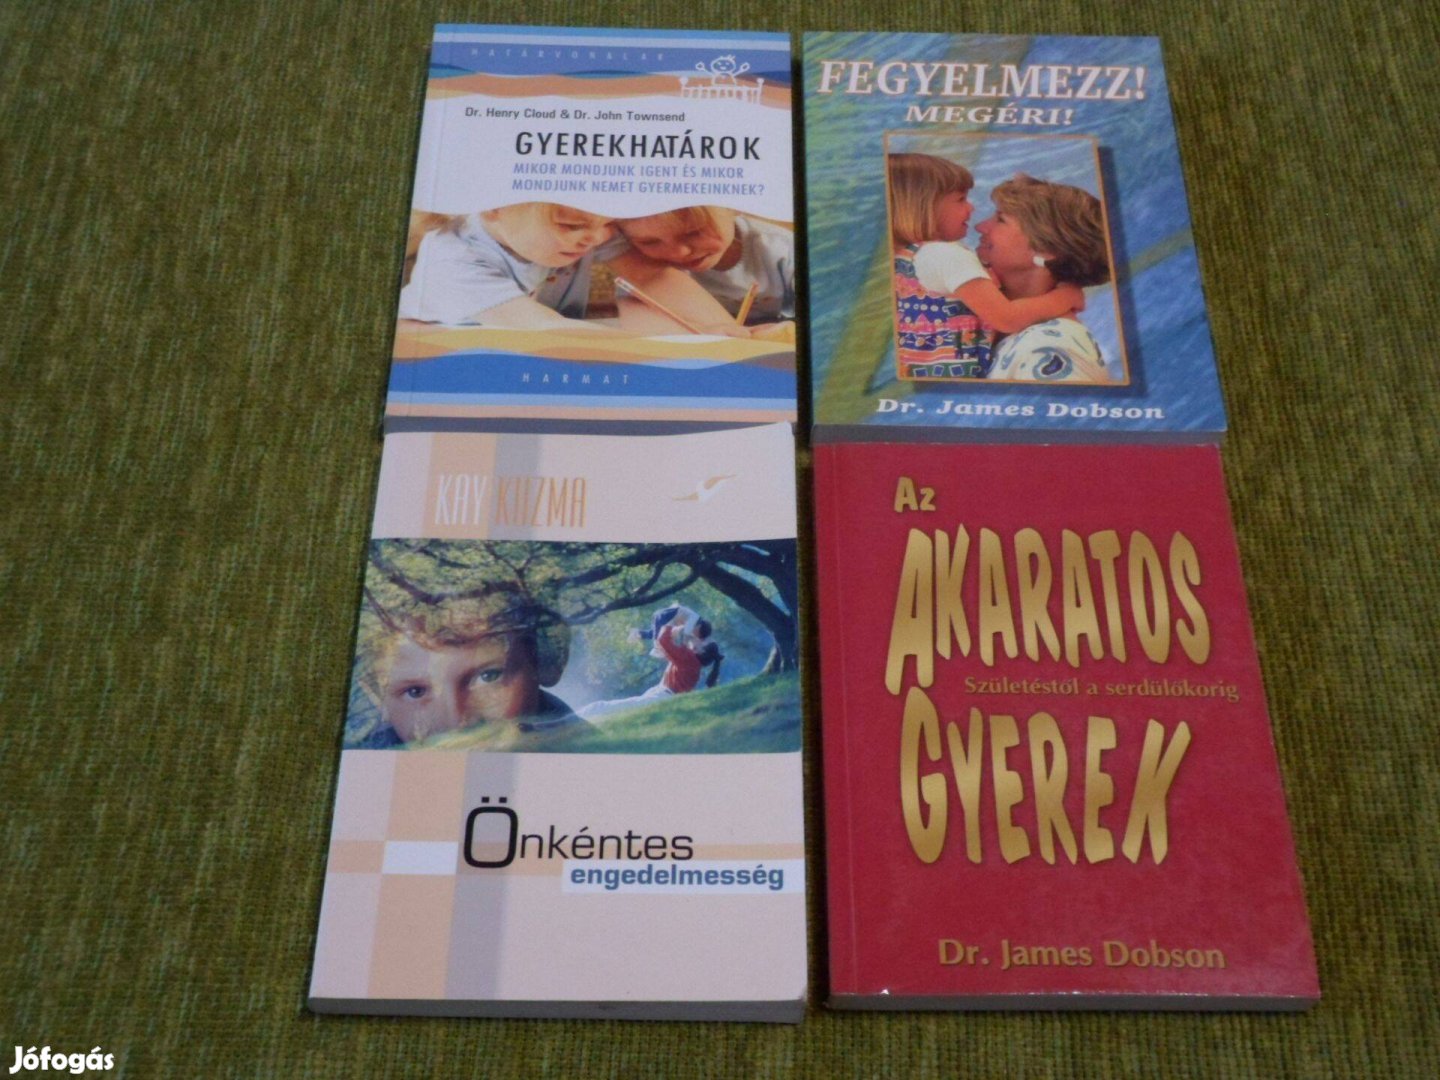 Gyereknevelés könyvcsomag négy könyvből összeállítva: